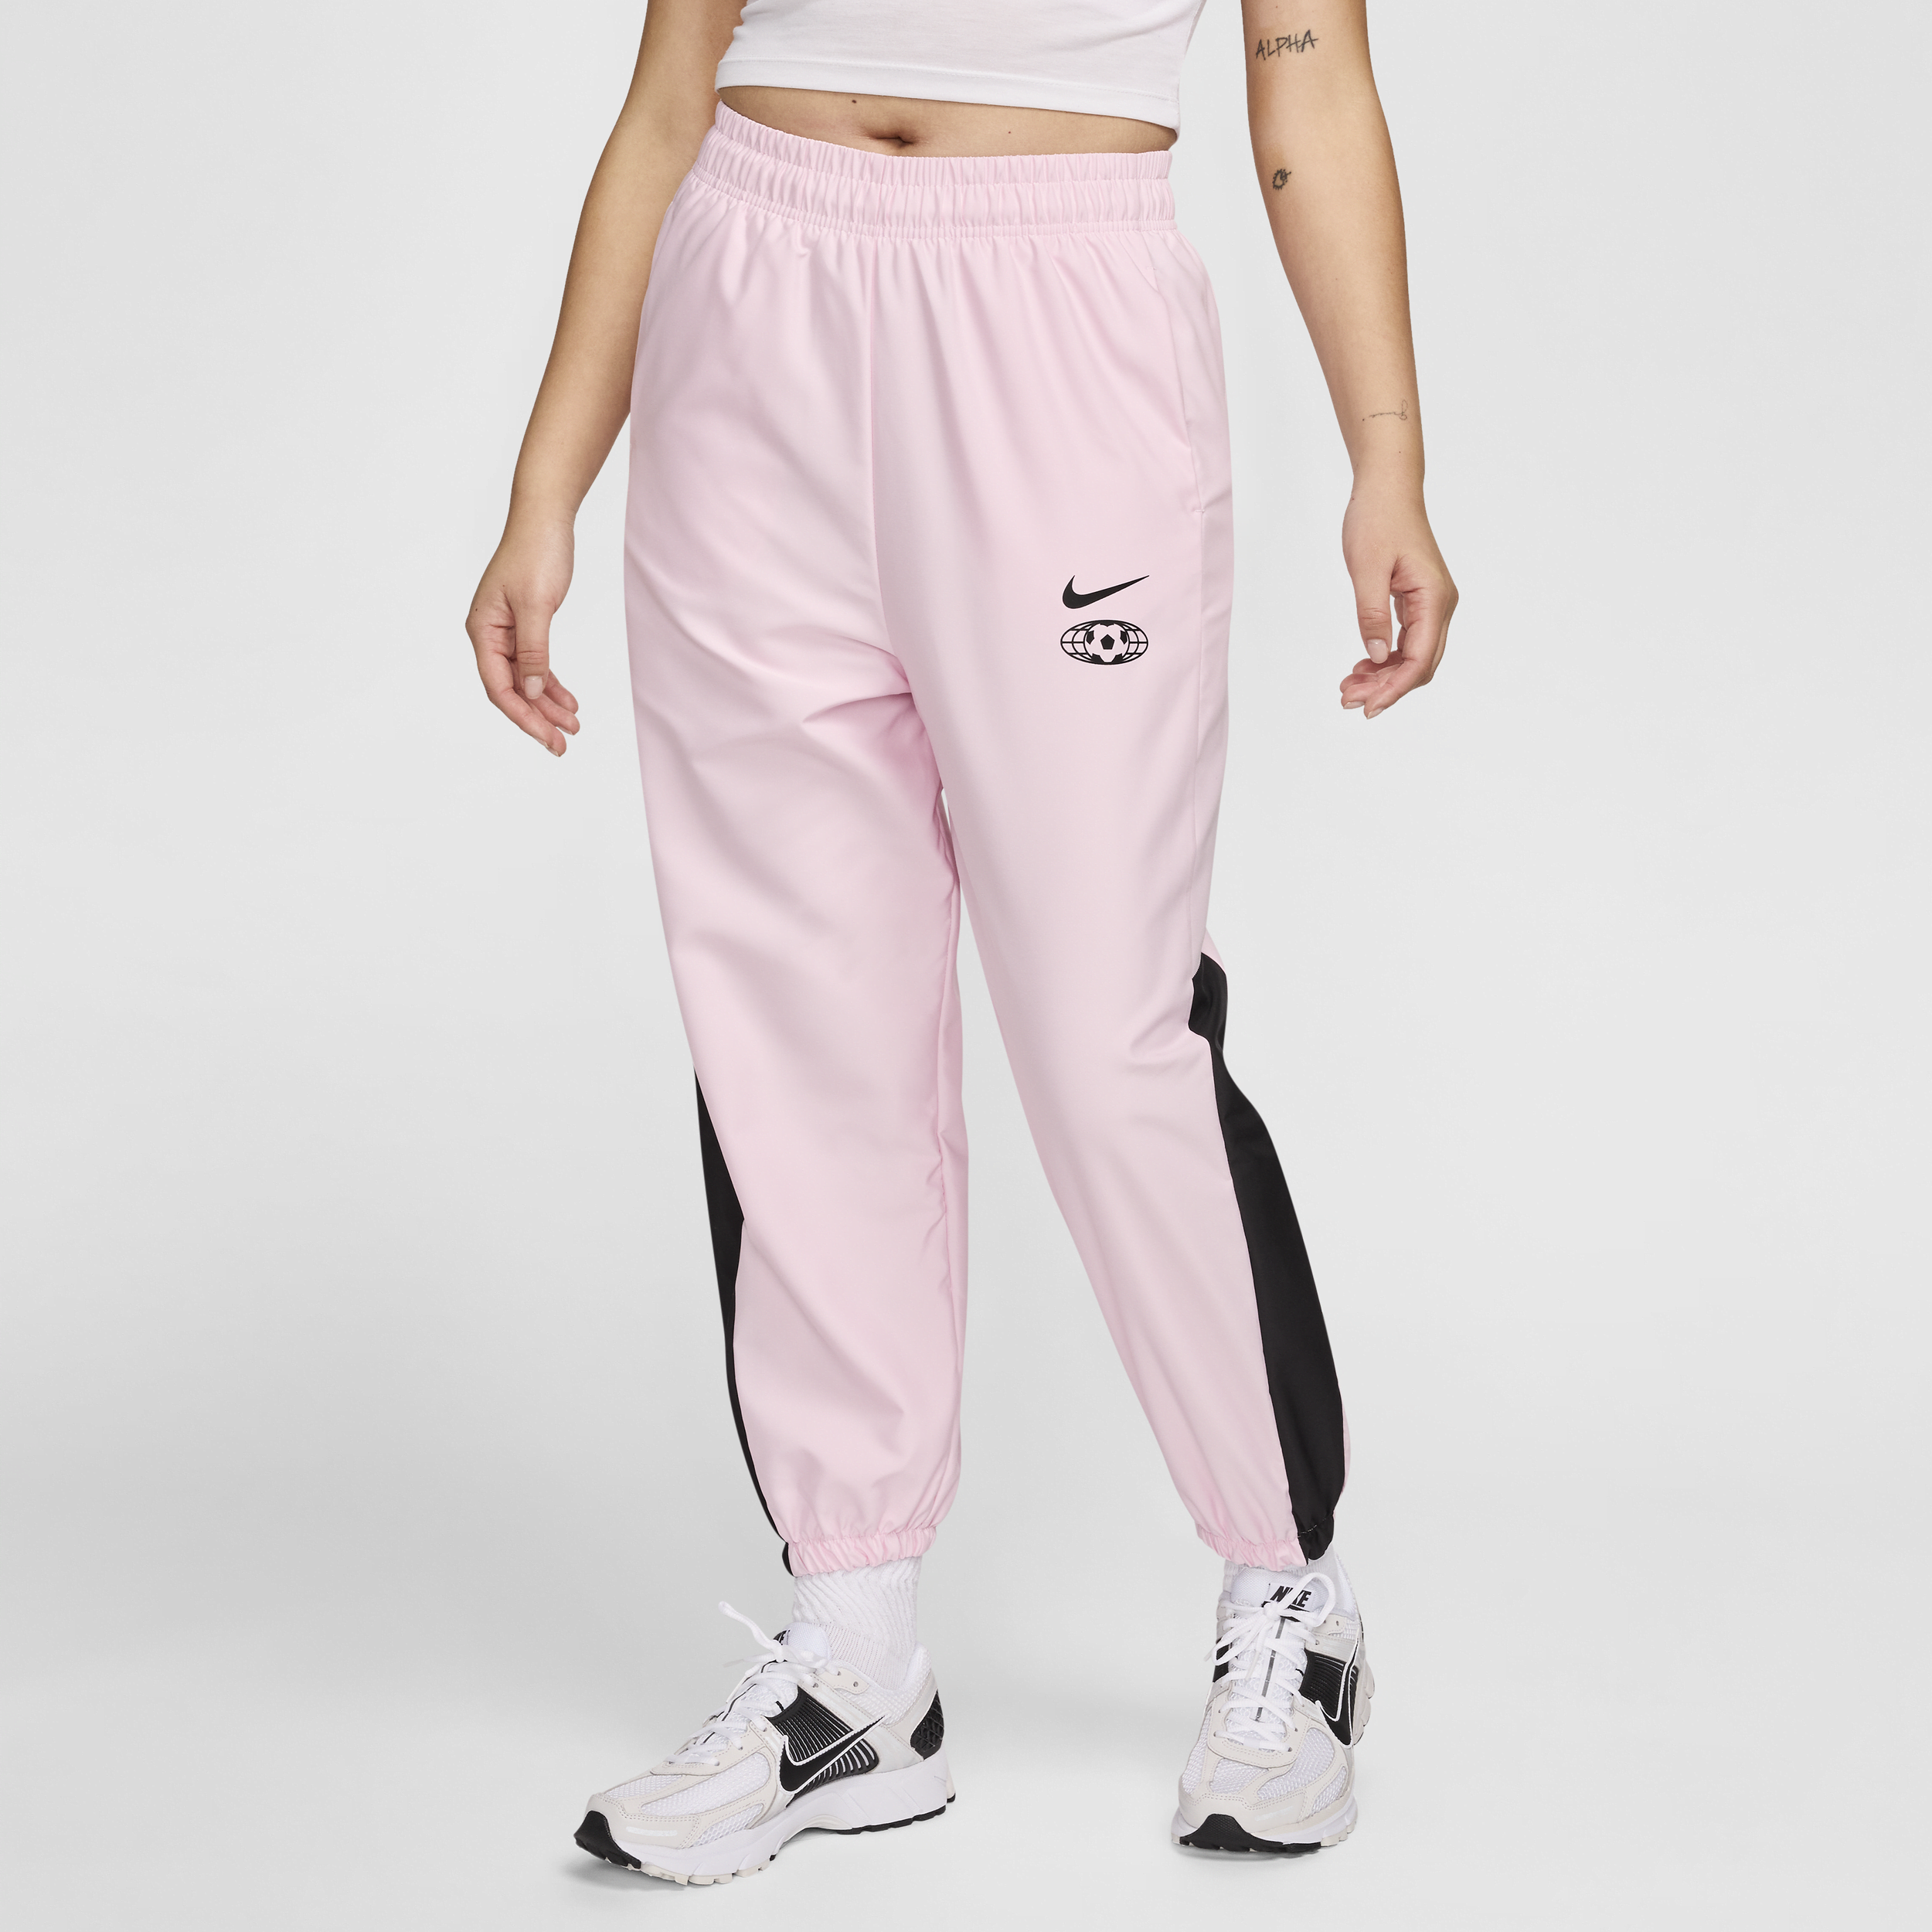 Vævede Nike Sportswear-joggers til kvinder - Pink